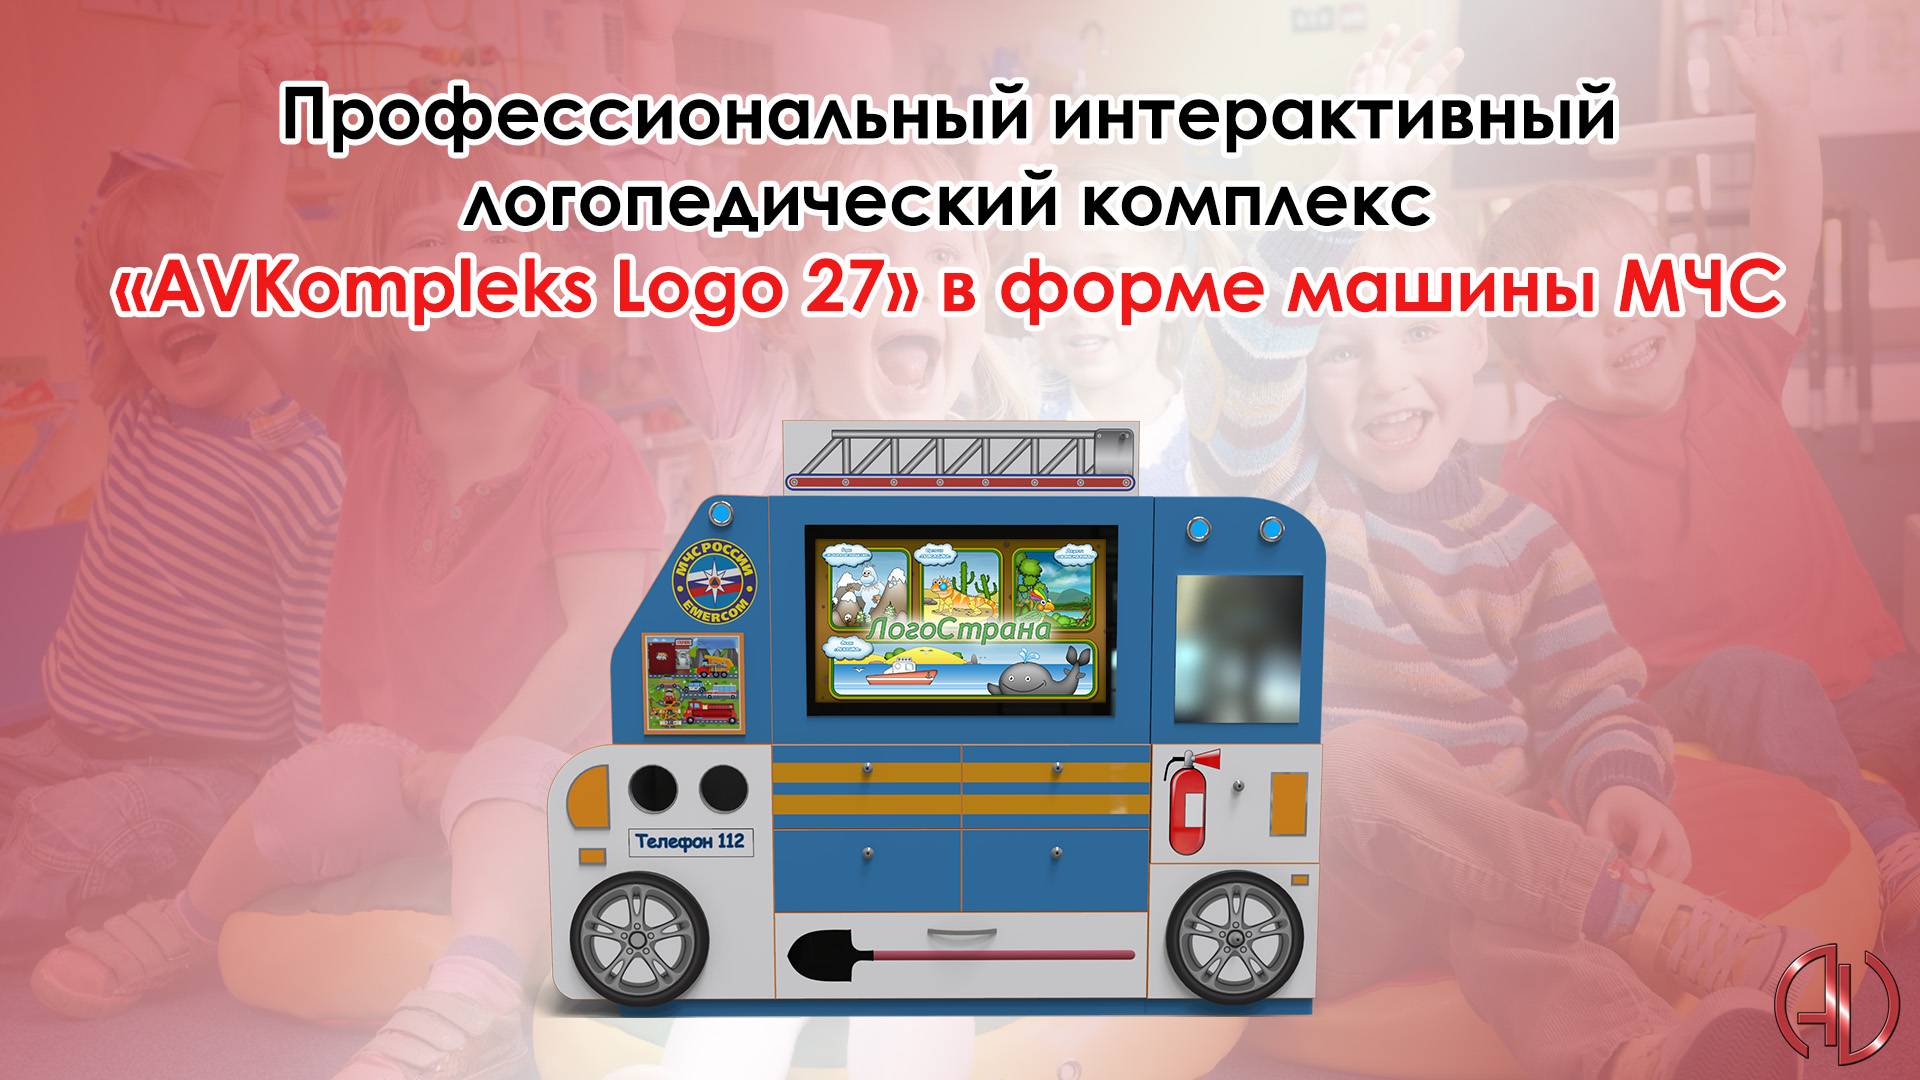 Профессиональный интерактивный логопедический комплекс «AVKompleks Logo 27» в форме машины МЧС